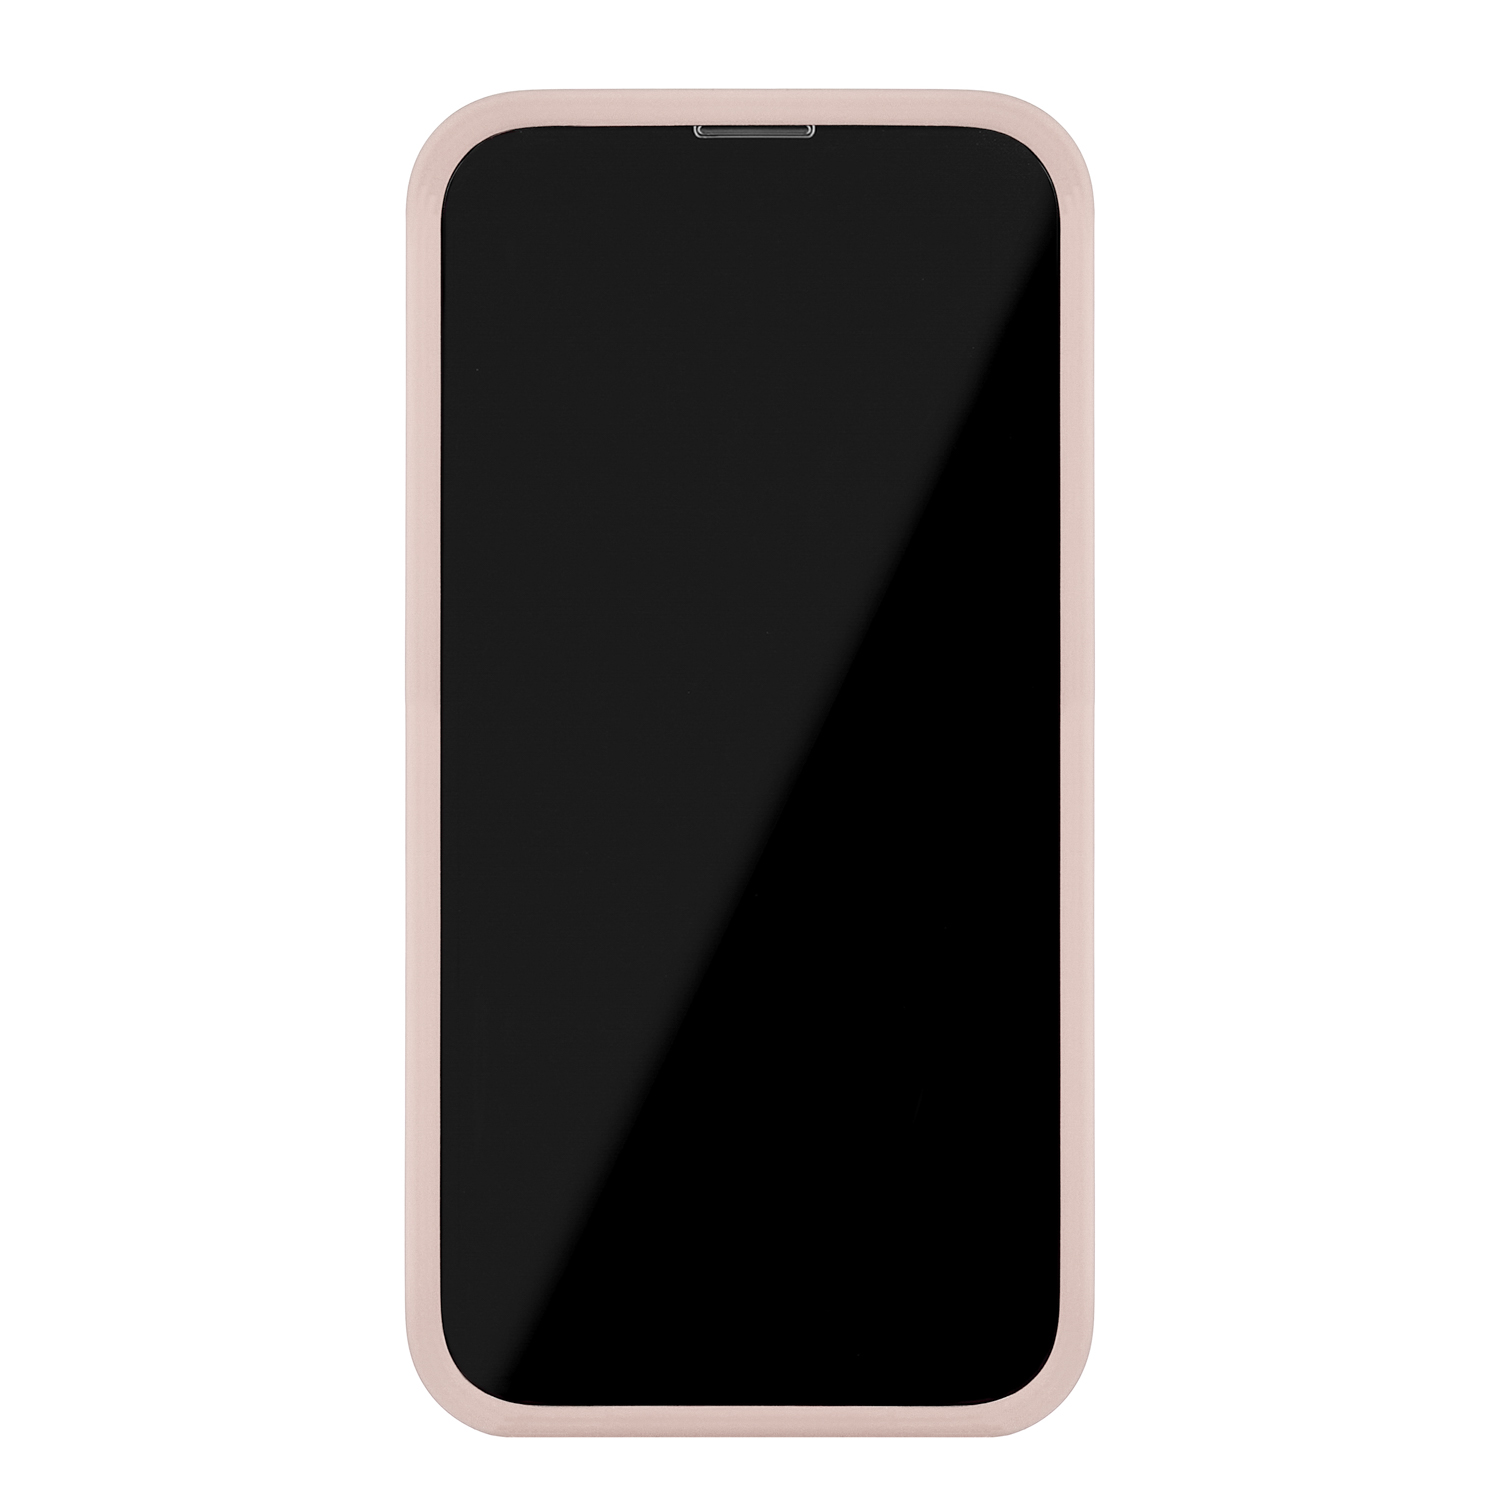 Чехол защитный uBear Touch Mag Case для  iPhone 14, MagSafe совместимый, силикон, софт-тач, розовый